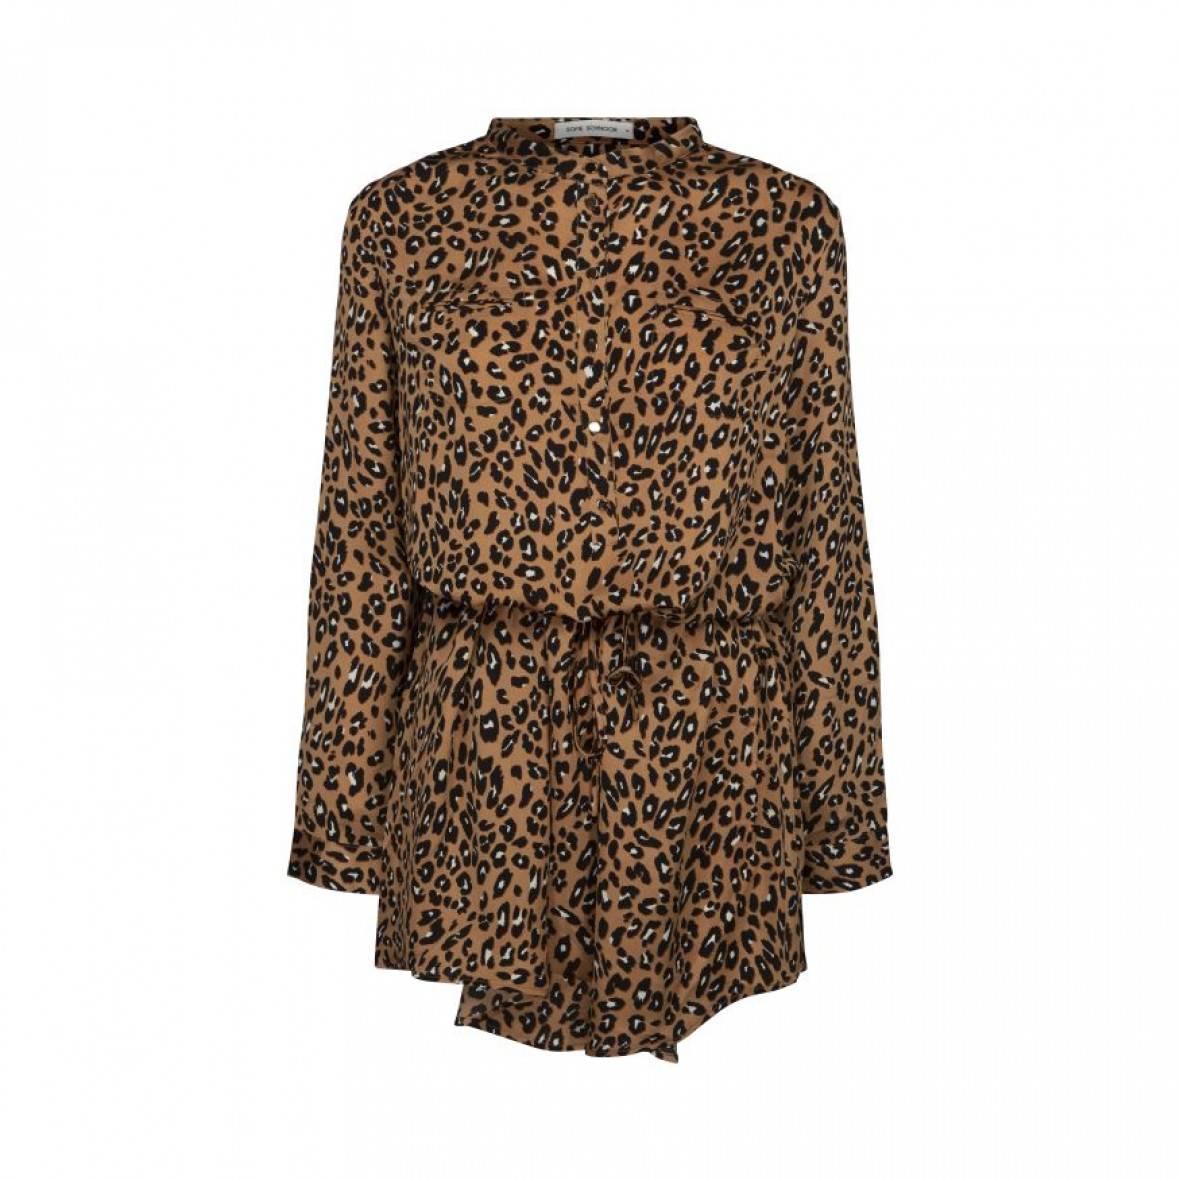 SOFIE SCHNOOR - Tan Leopard Print Dress With Tie Waist – Energy ...